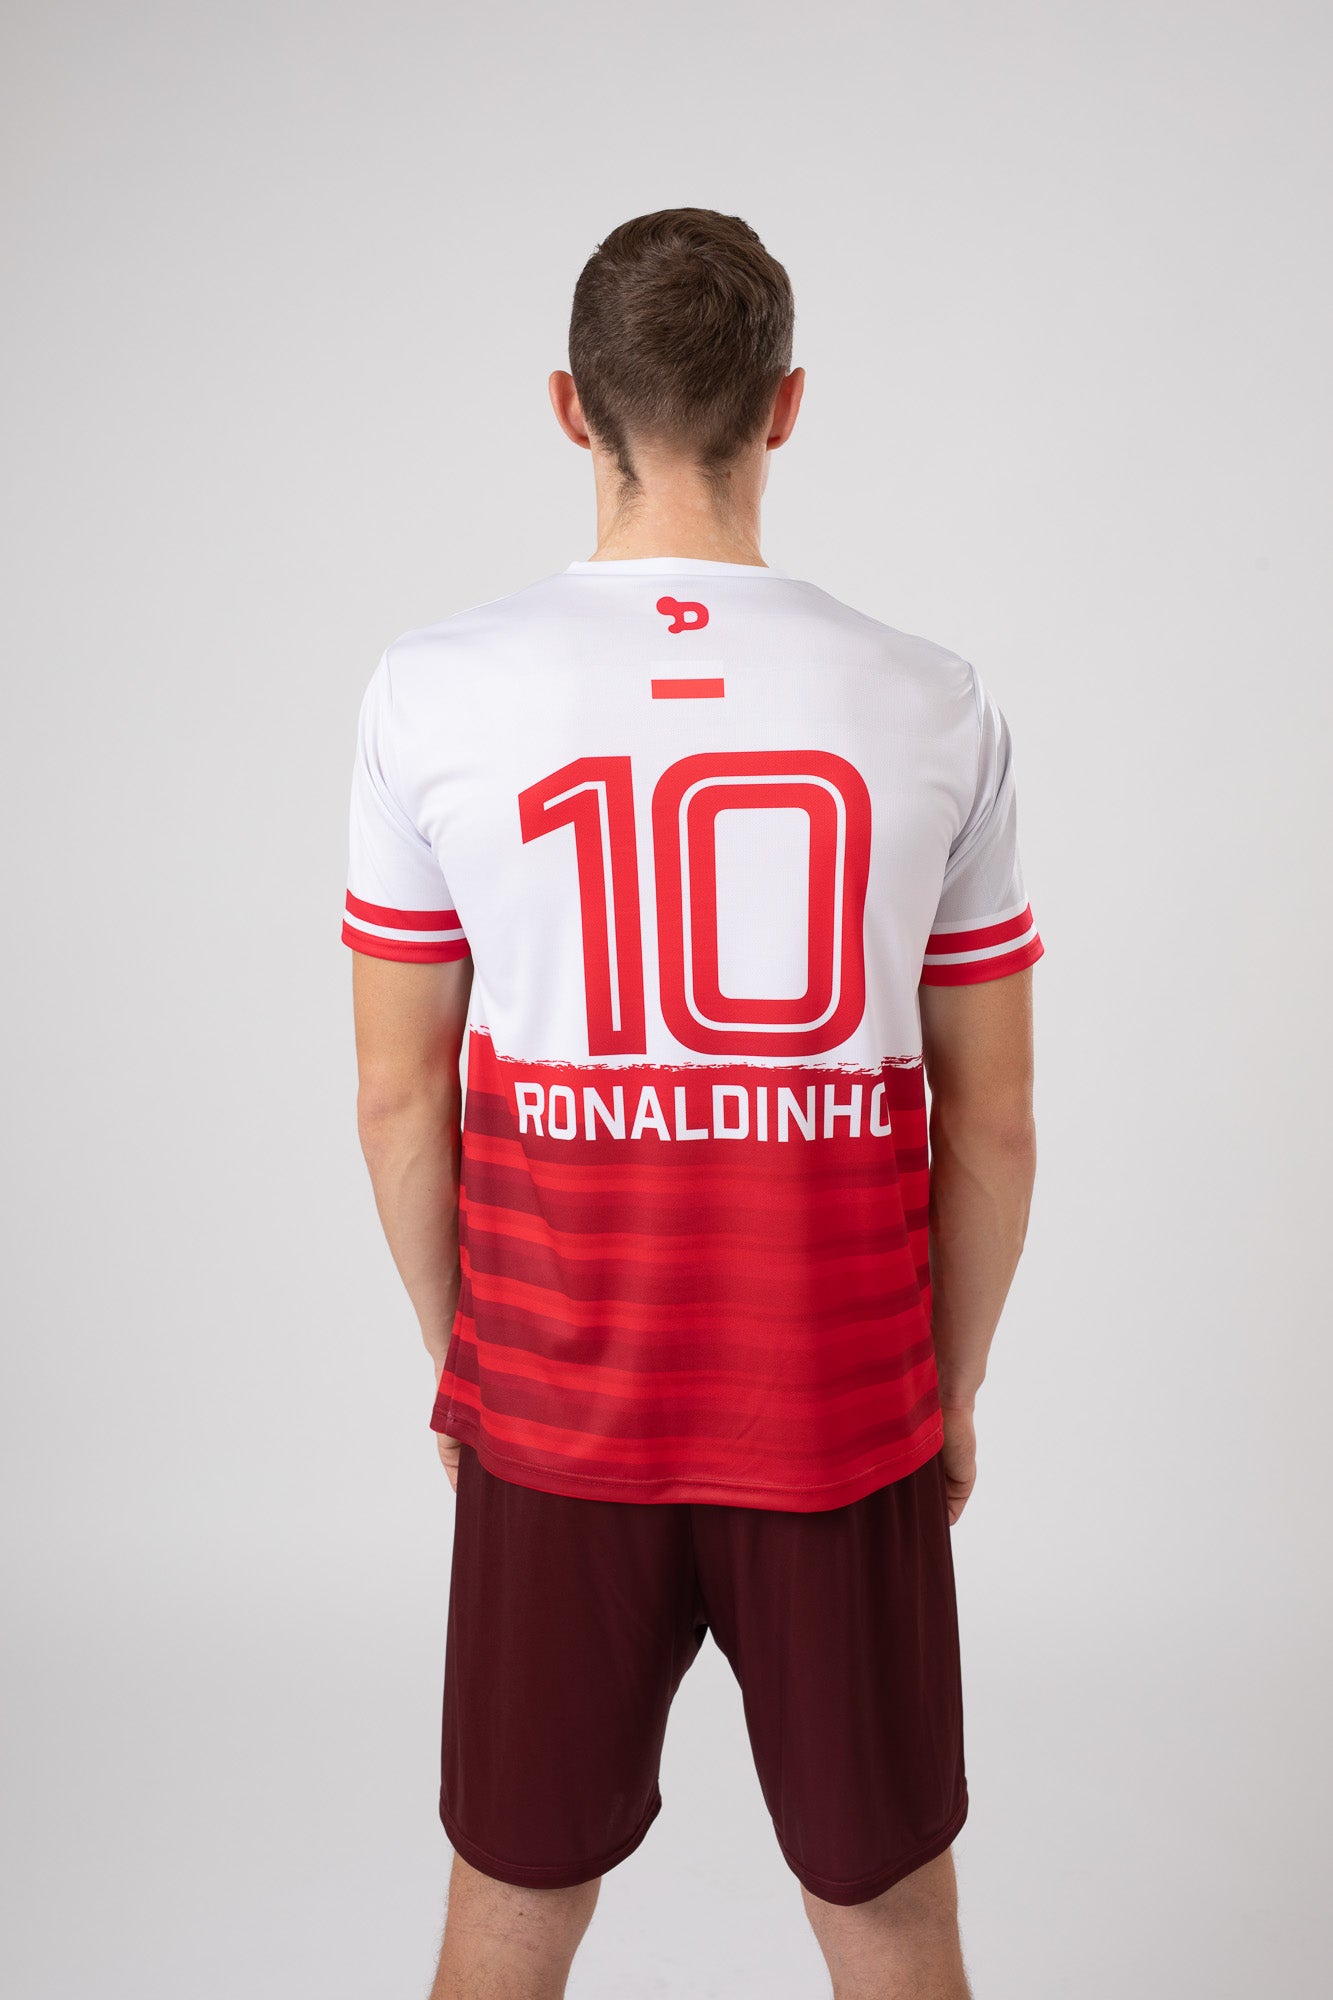 Ronaldinho Poland Jersey/Camisa Replica